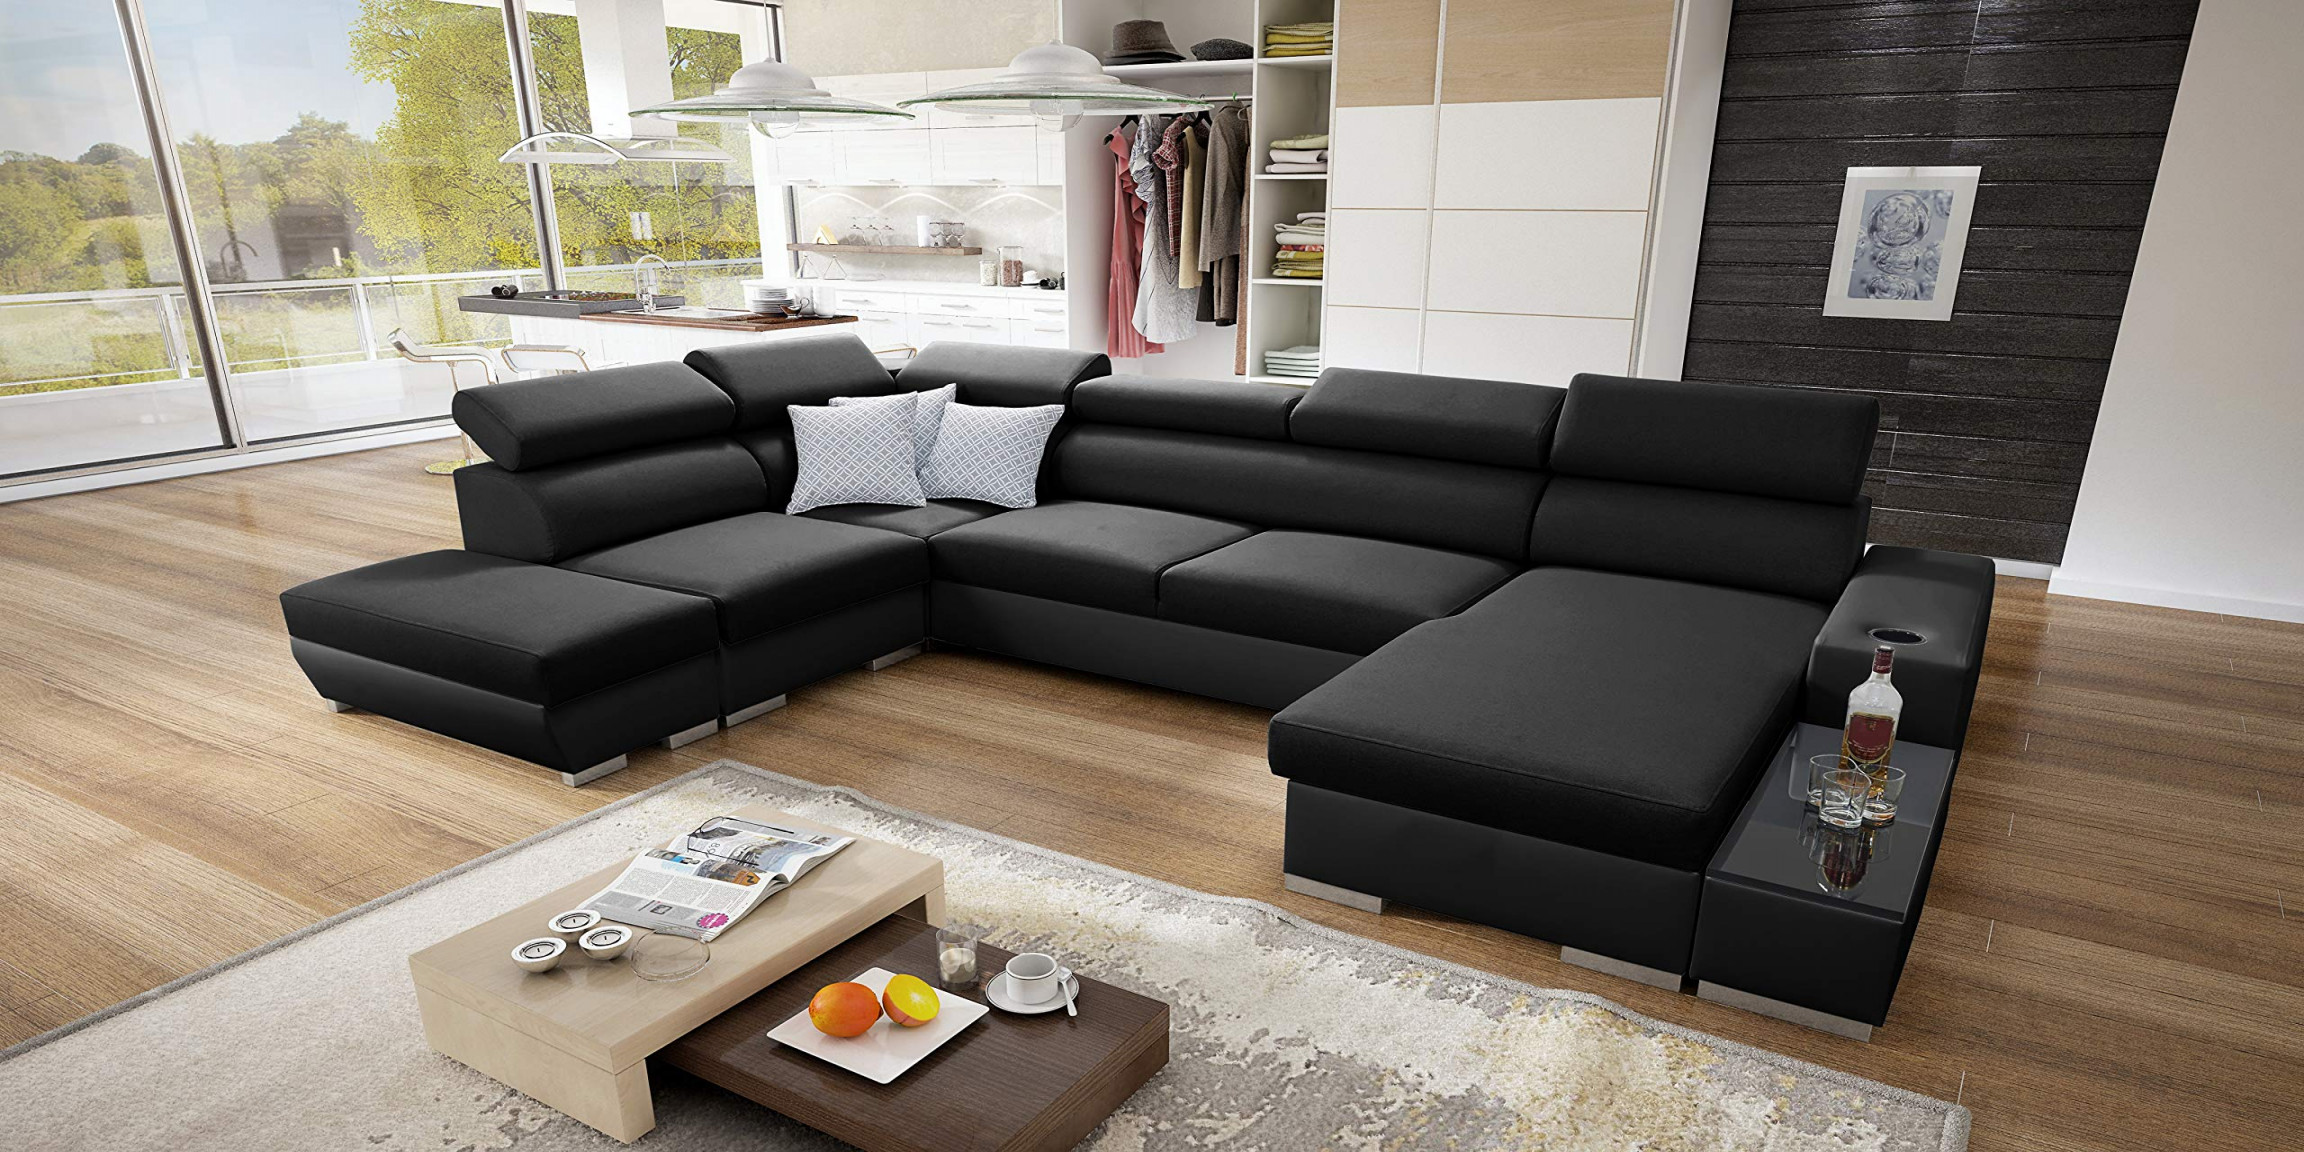 couch zu groß für wohnzimmer